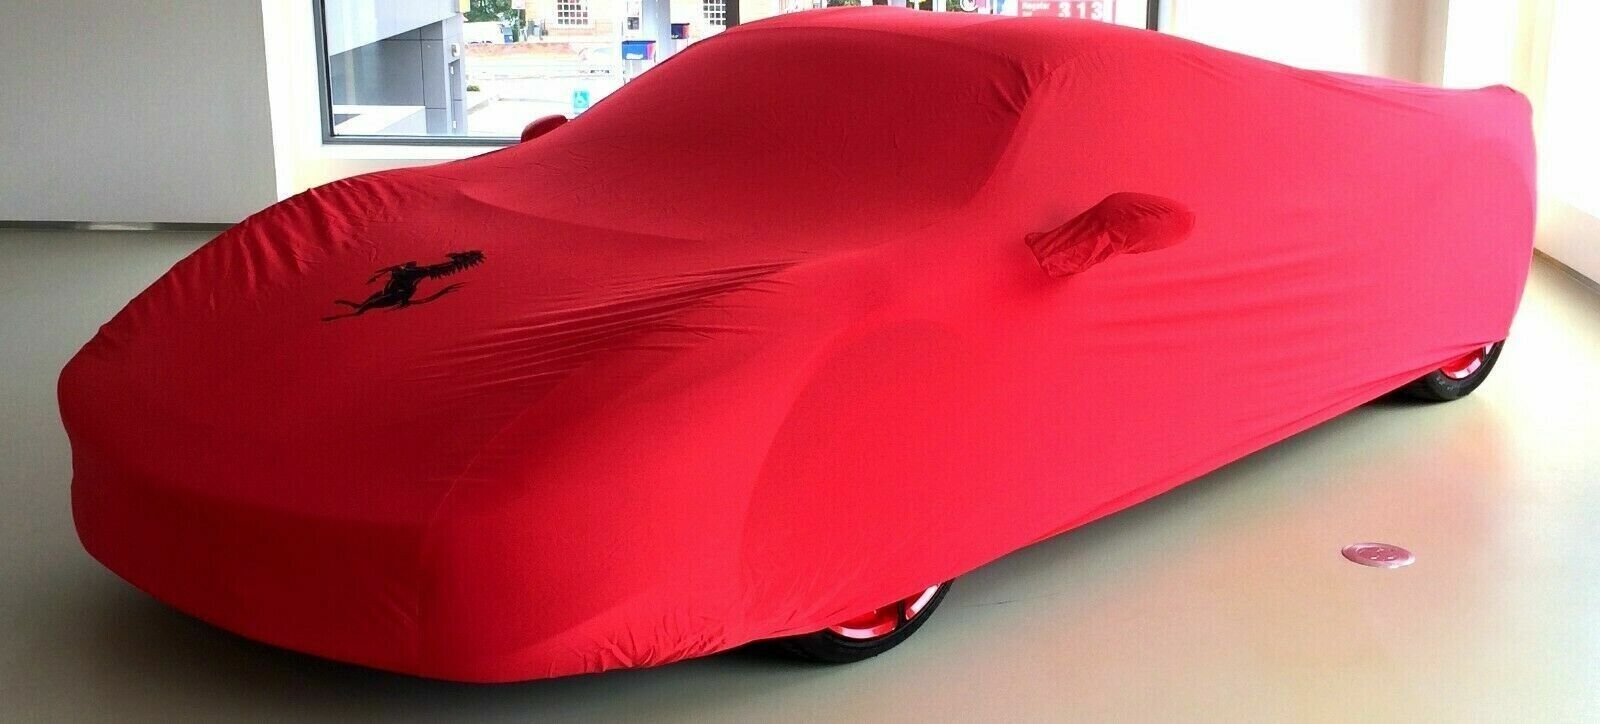 Genuine Ferrari 599 GTB Fiorano RED Indoor Car Cover OE Brand NEW